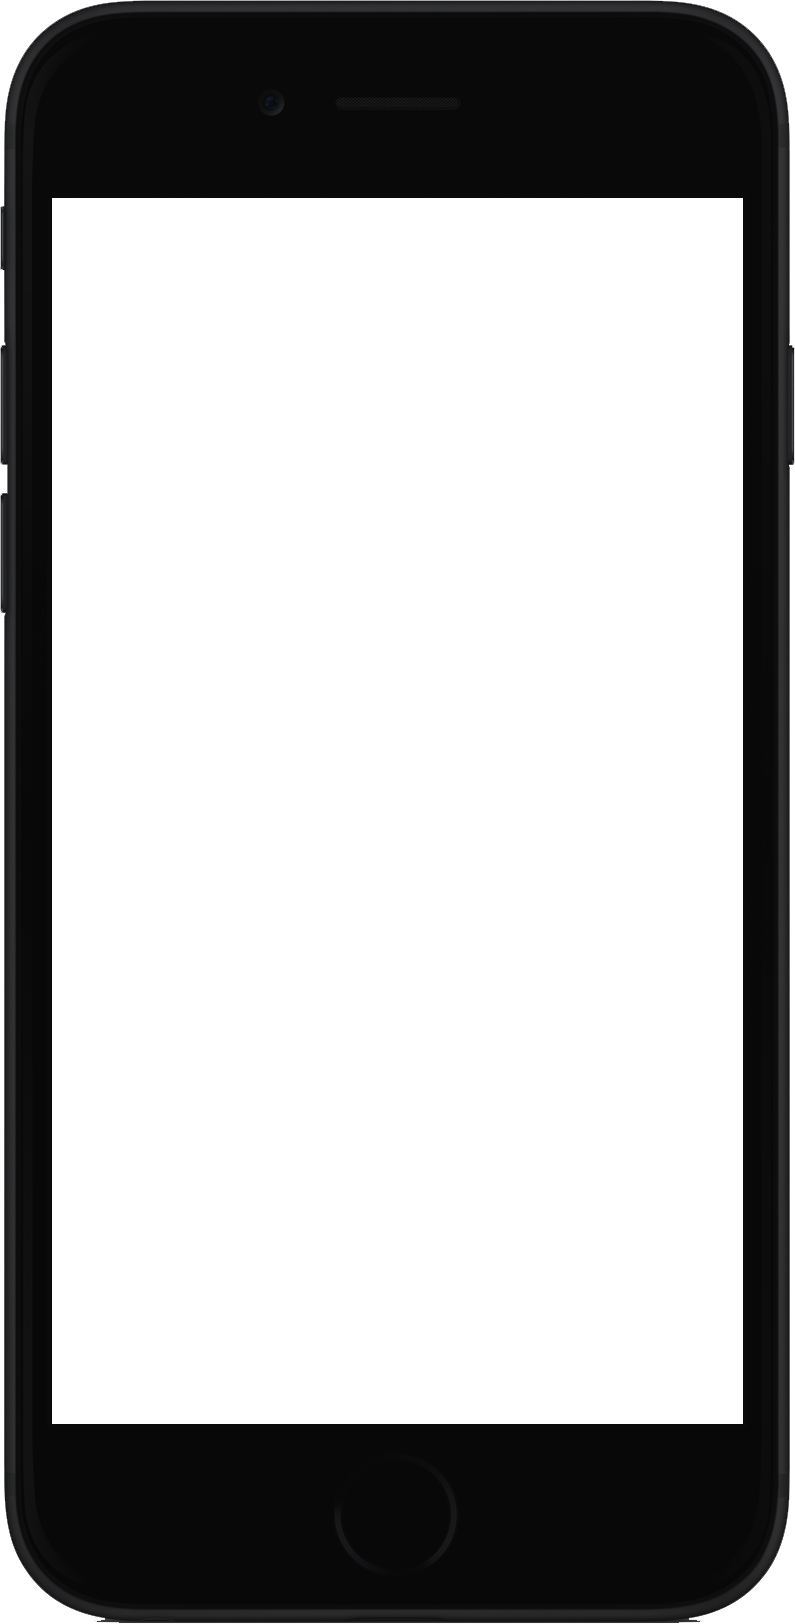 iPhone black